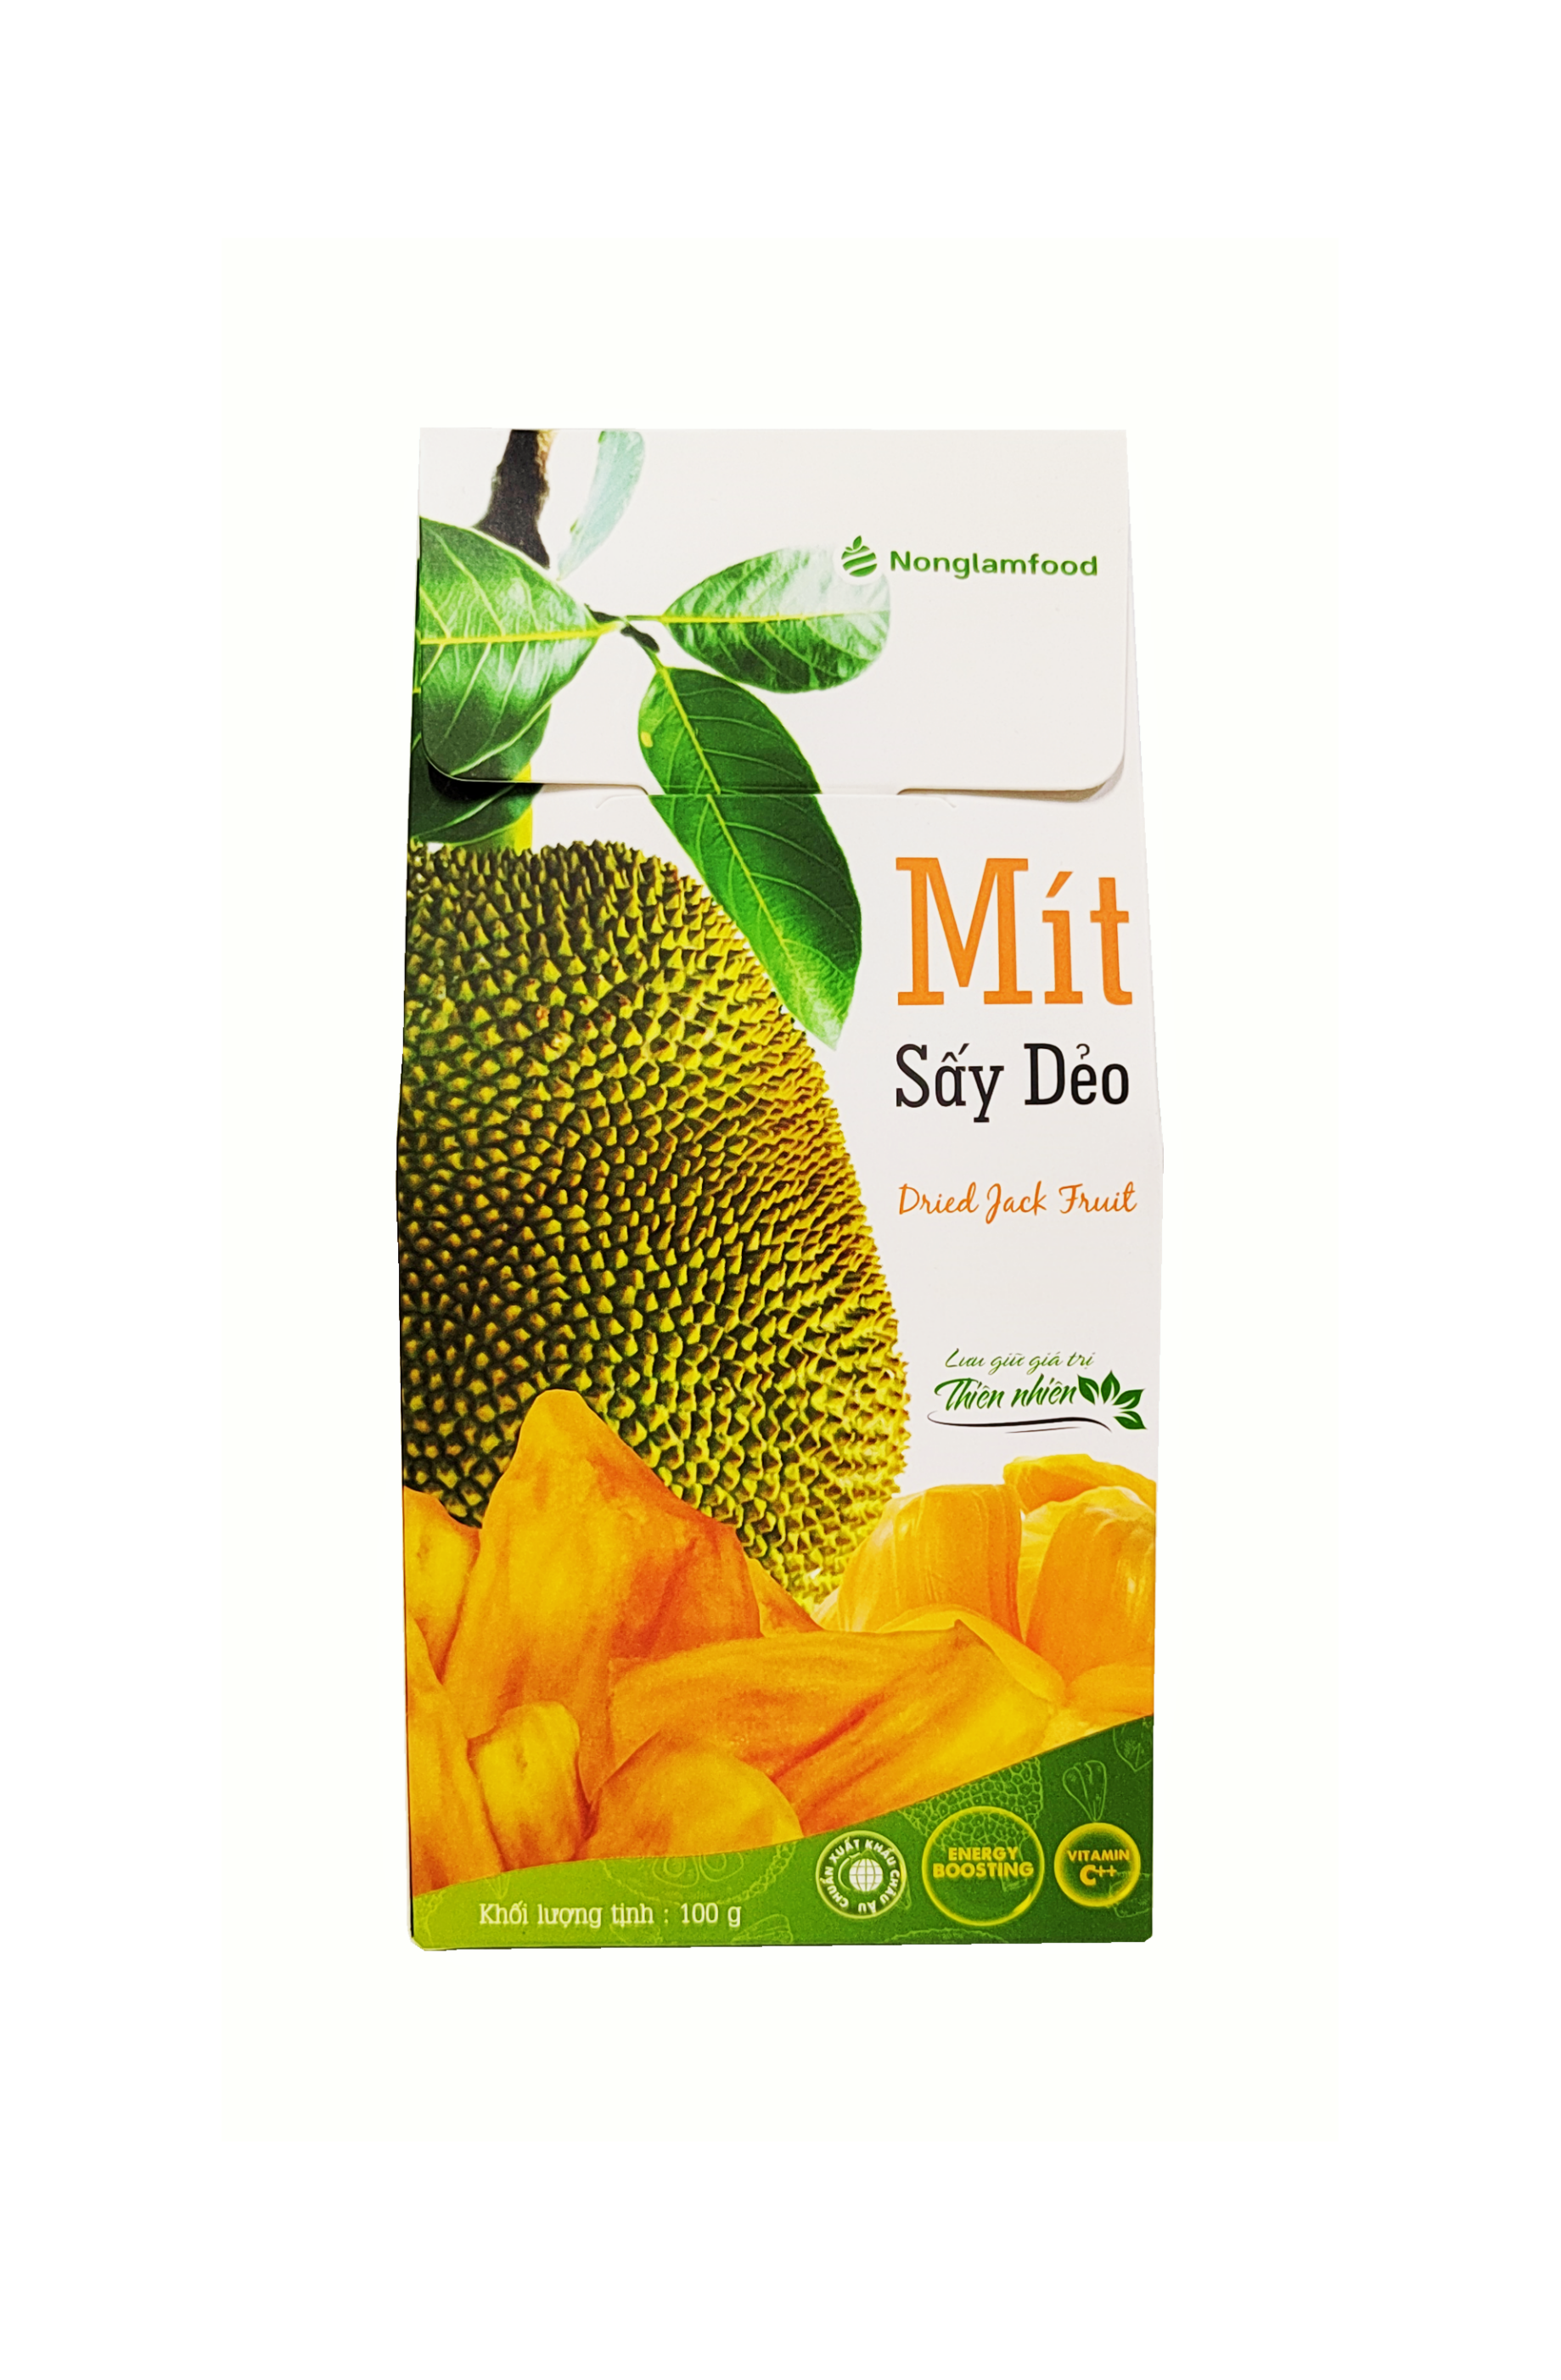 Dried Jackfrukt/ Mit Say Deo 100g - Thien Nhien Vietnam